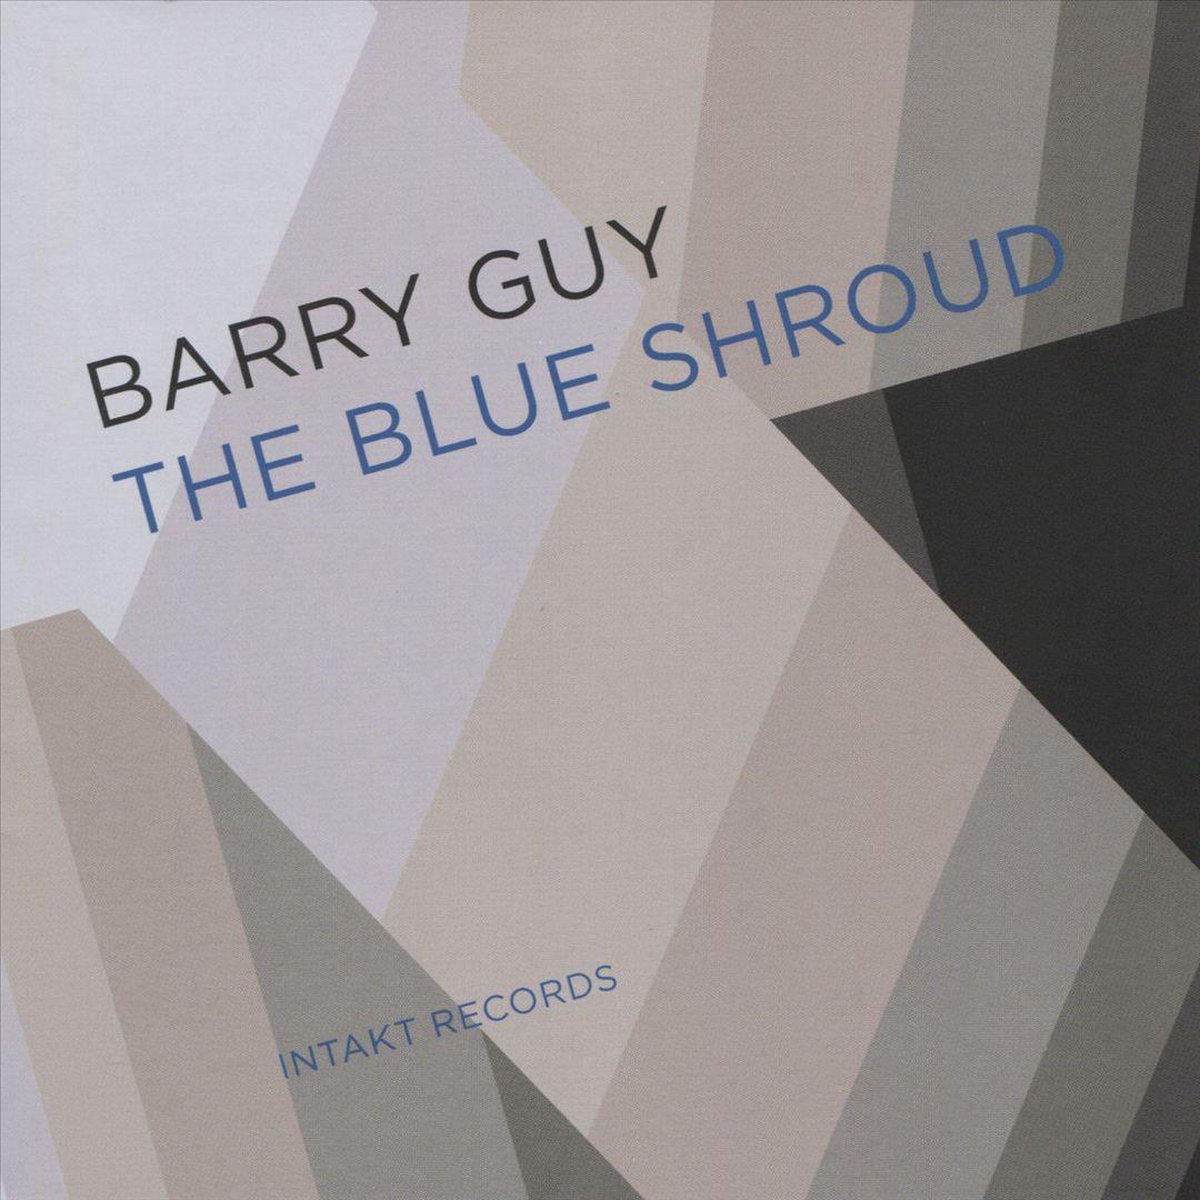 Barry Guy: The Blue Shroud